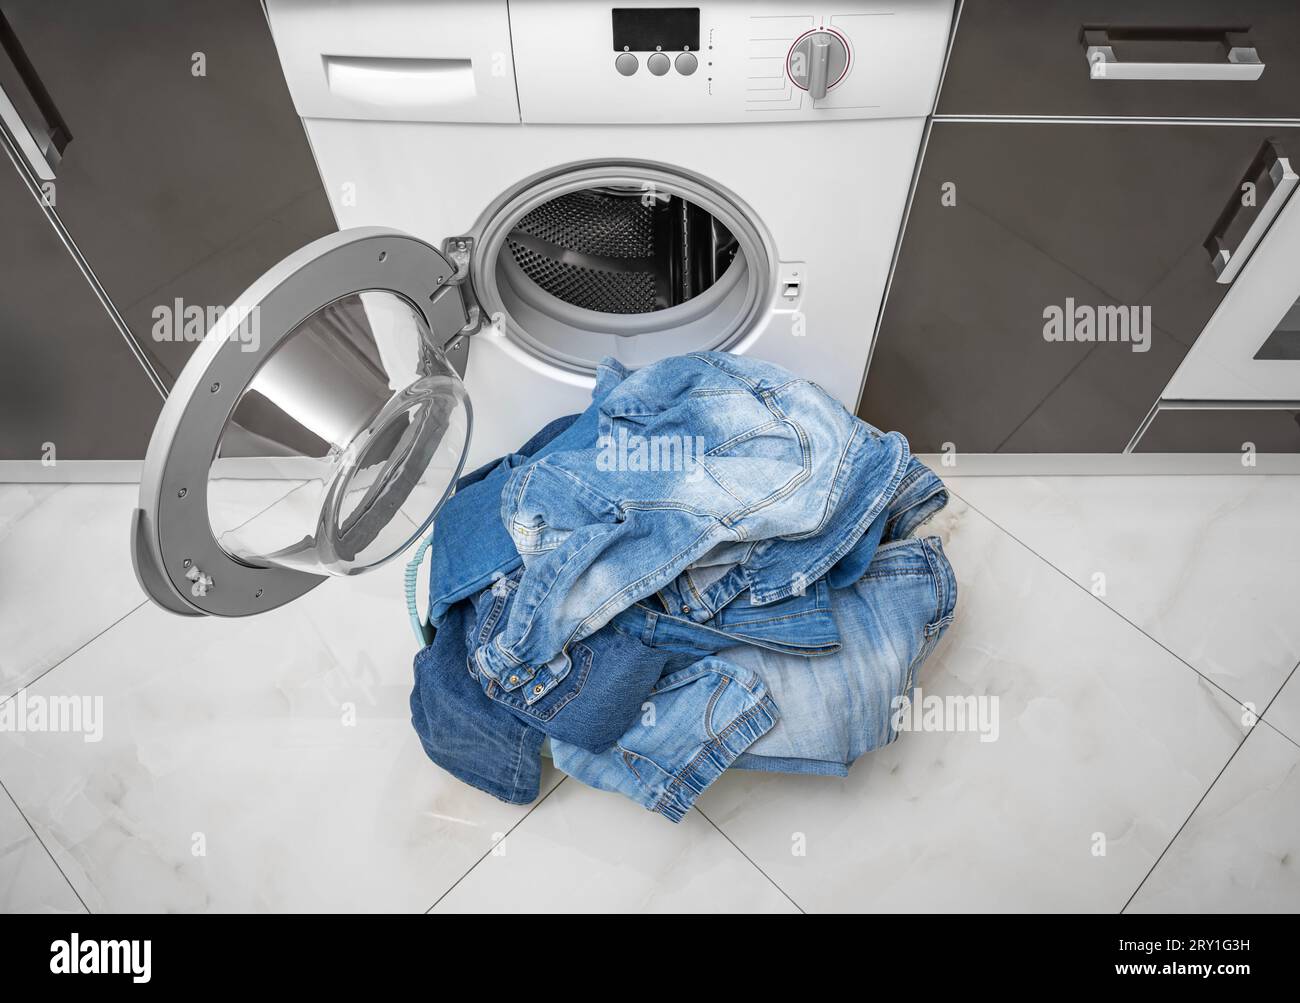 Washing denim items in the washing machine. Stock Photo